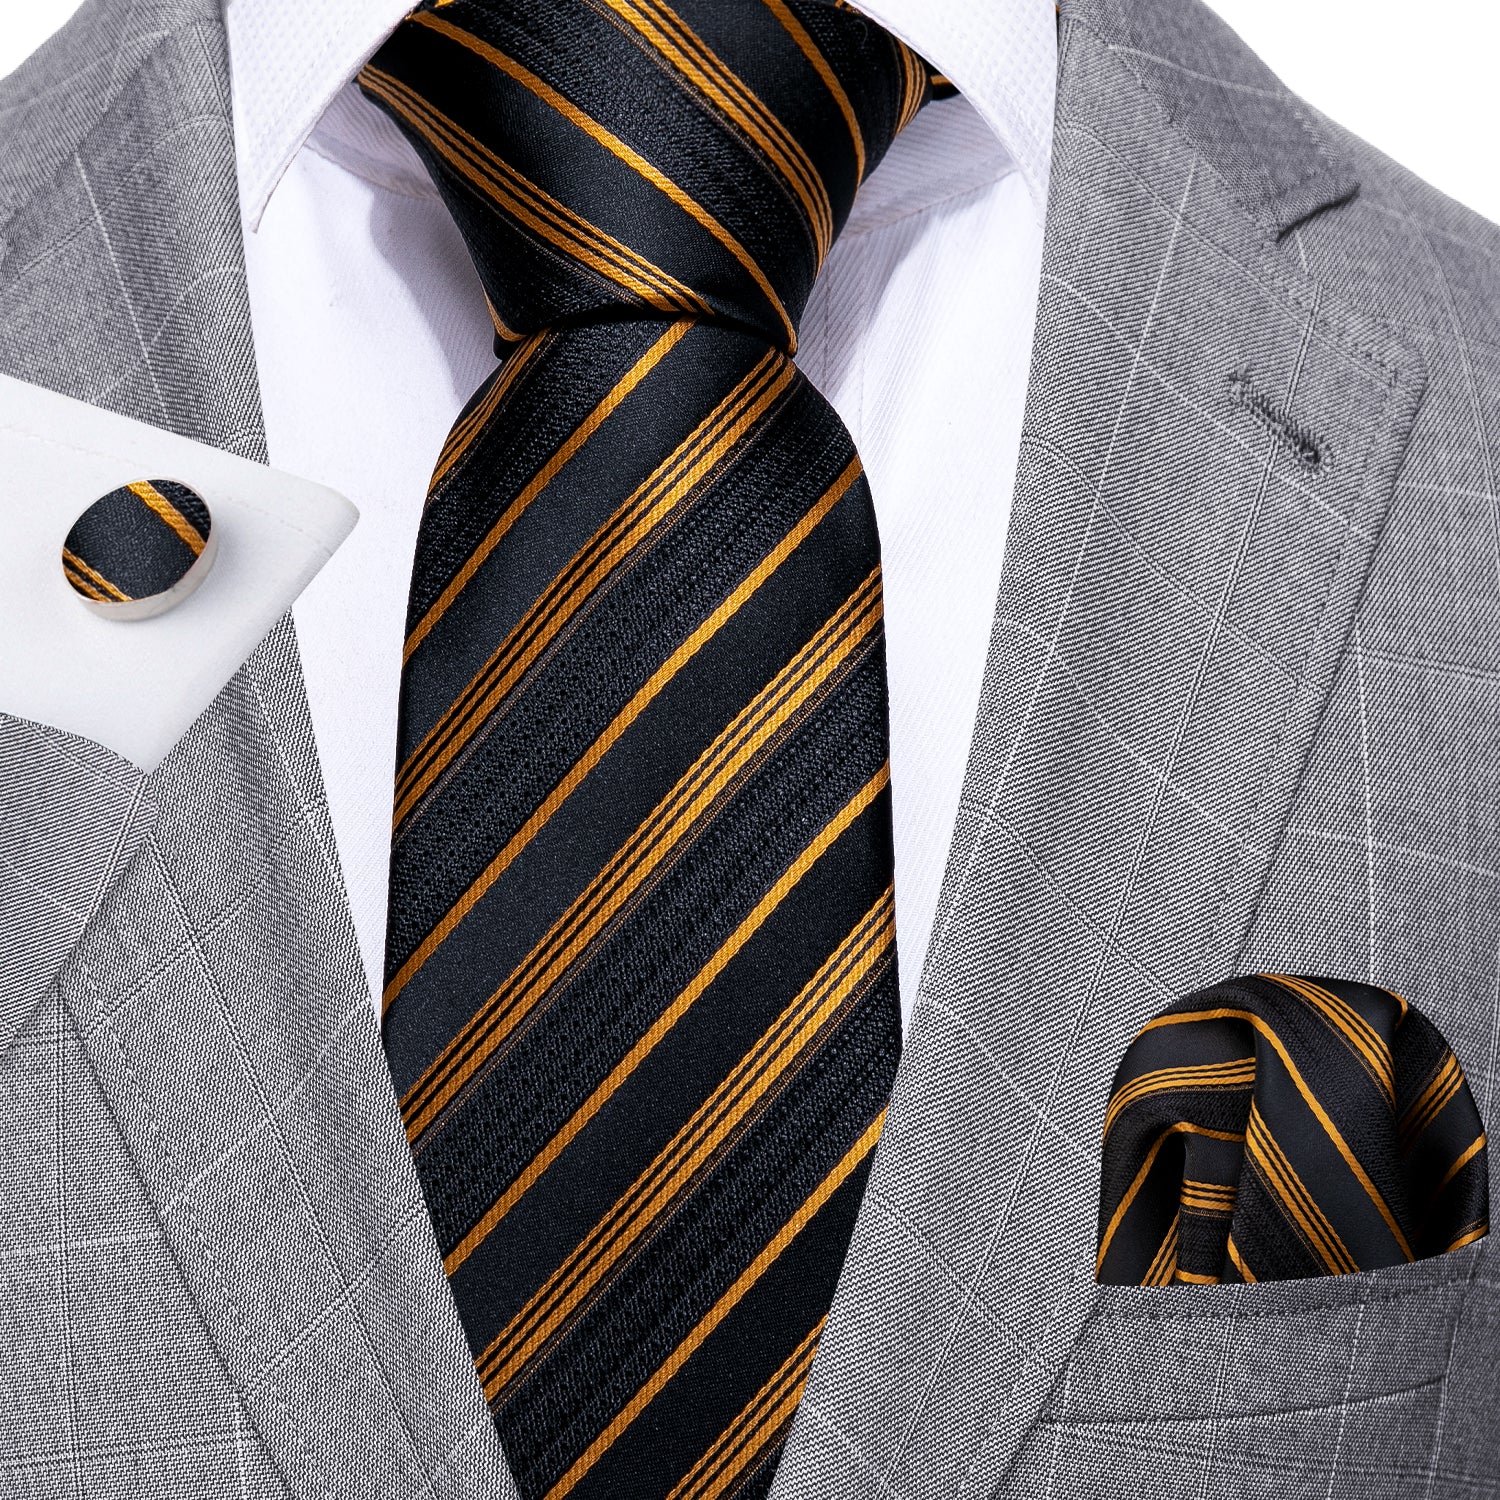 Gold Black Striped Silk Tie Handkerchief Cufflinks Set